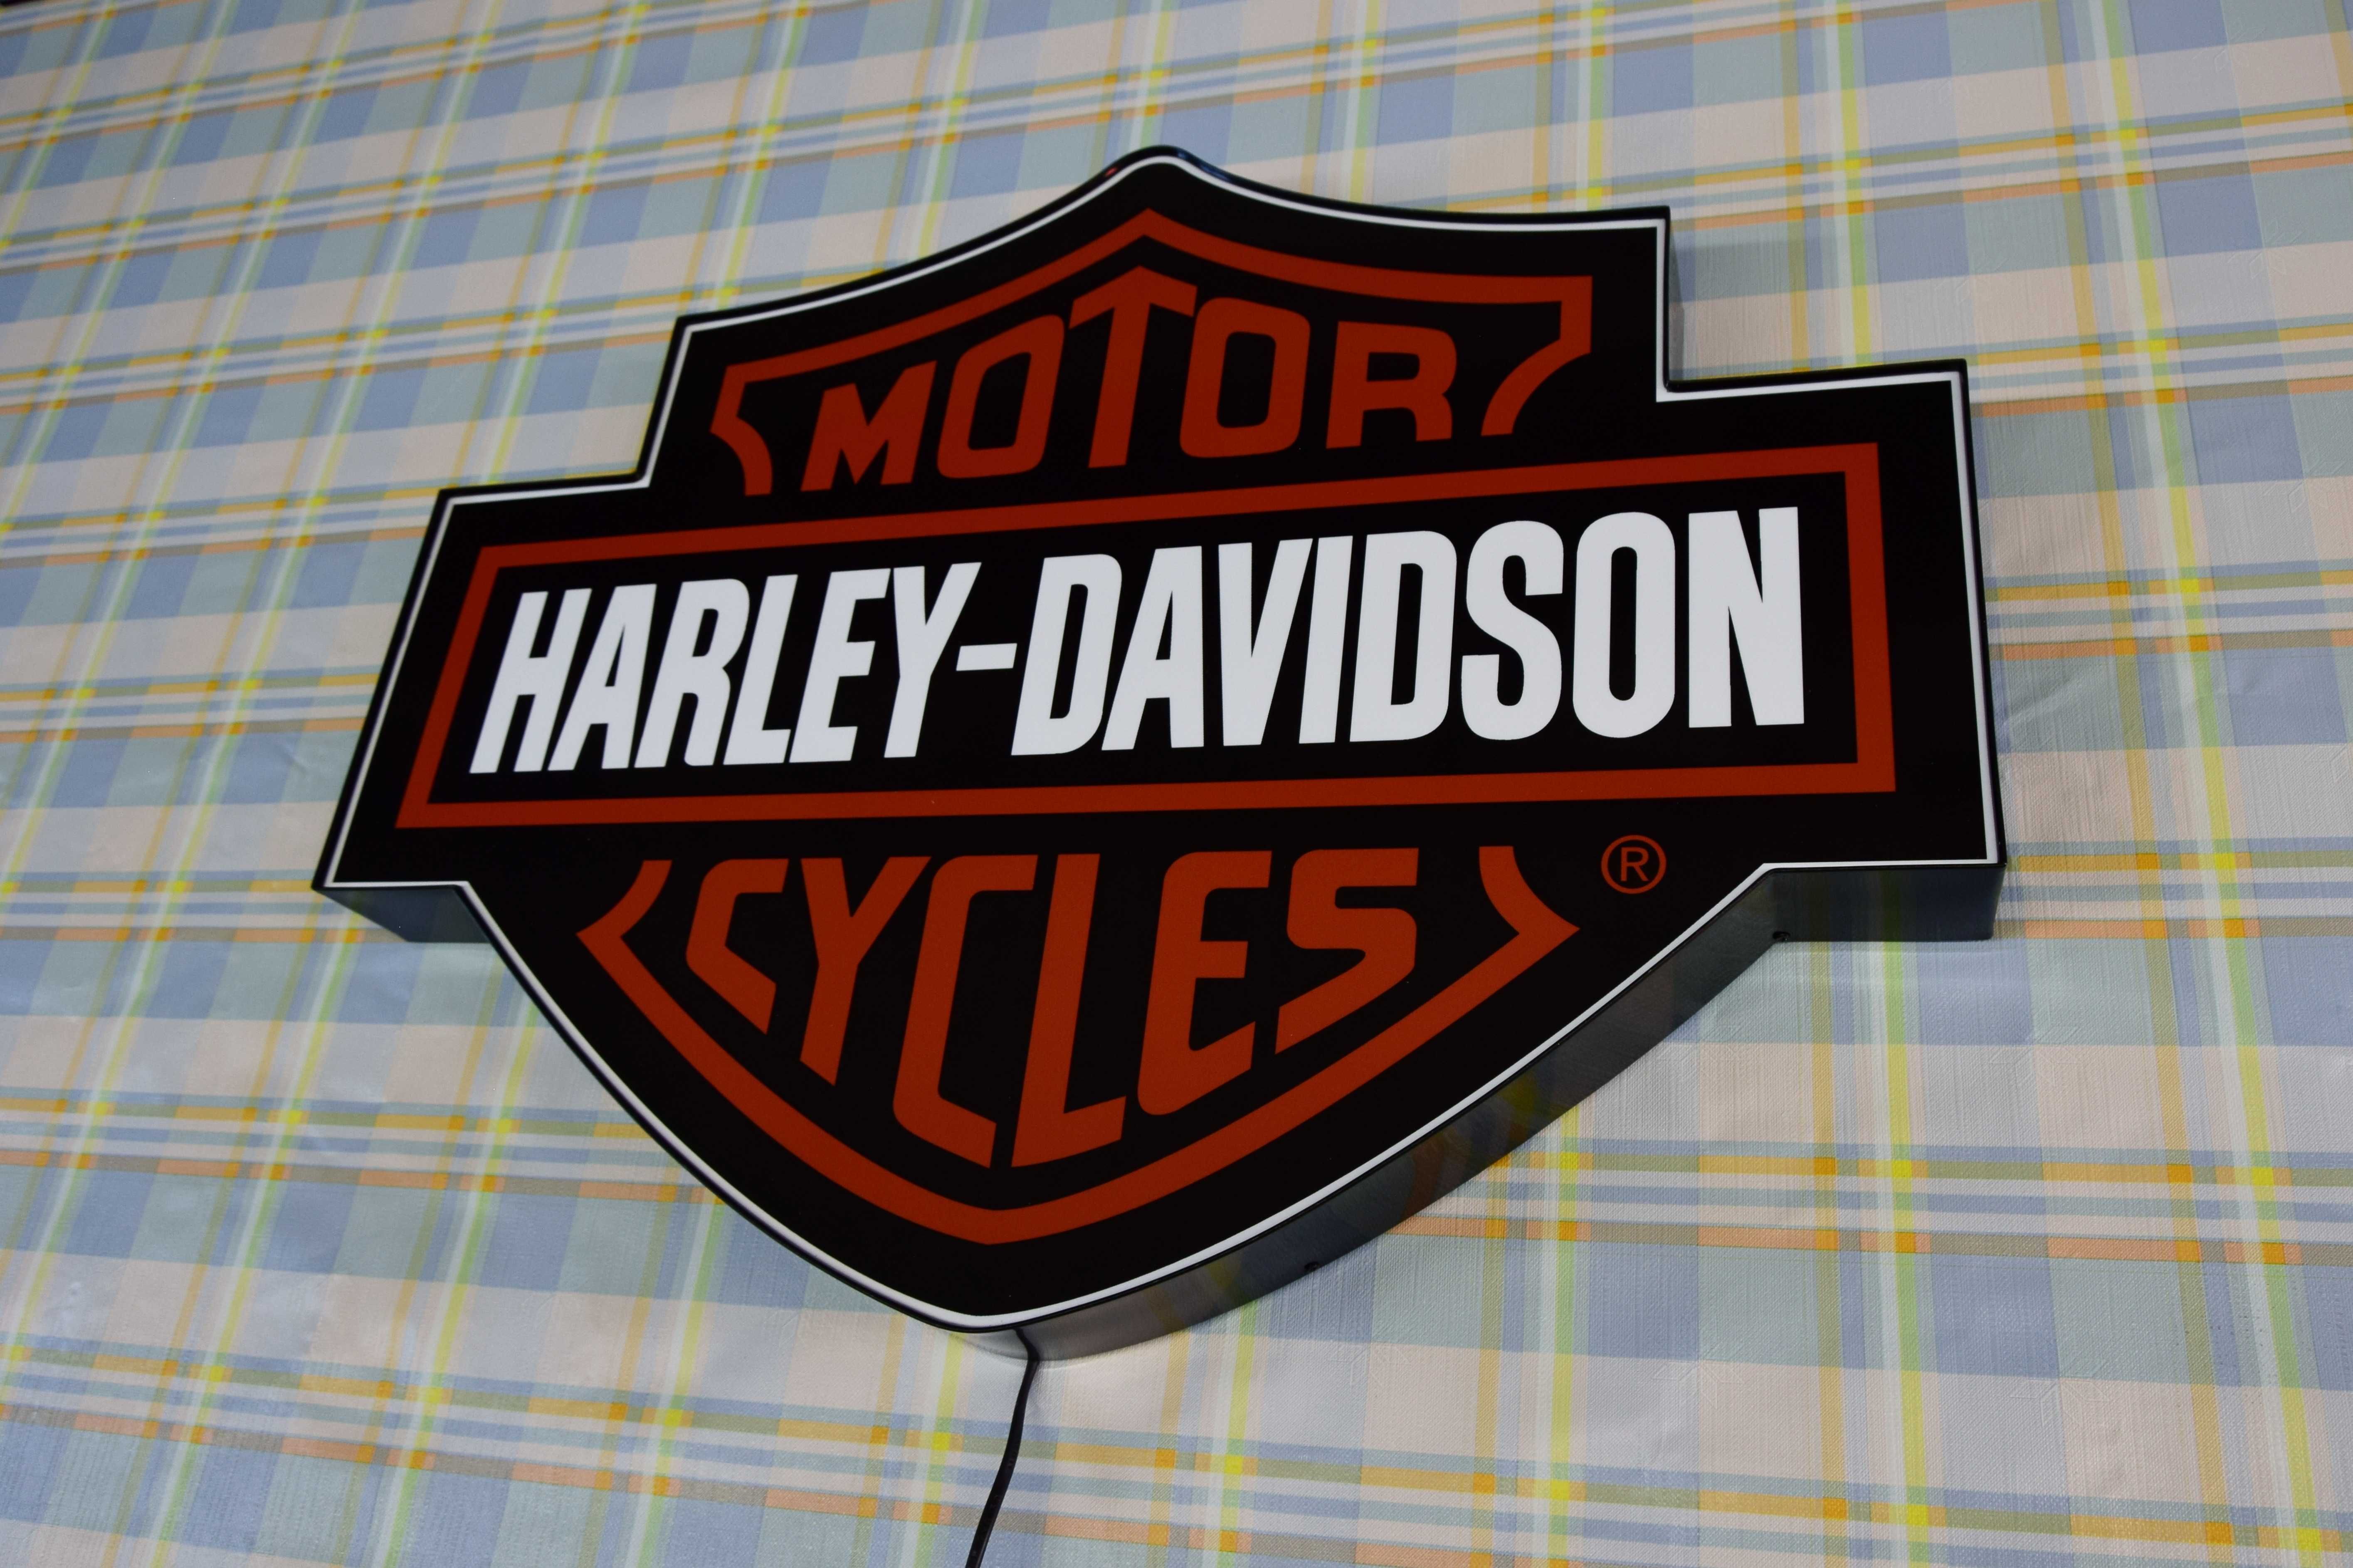 Podświetlane Logo HARLEY DAVIDSON, Szyld H-D, Emblemat, Neon, Prezent